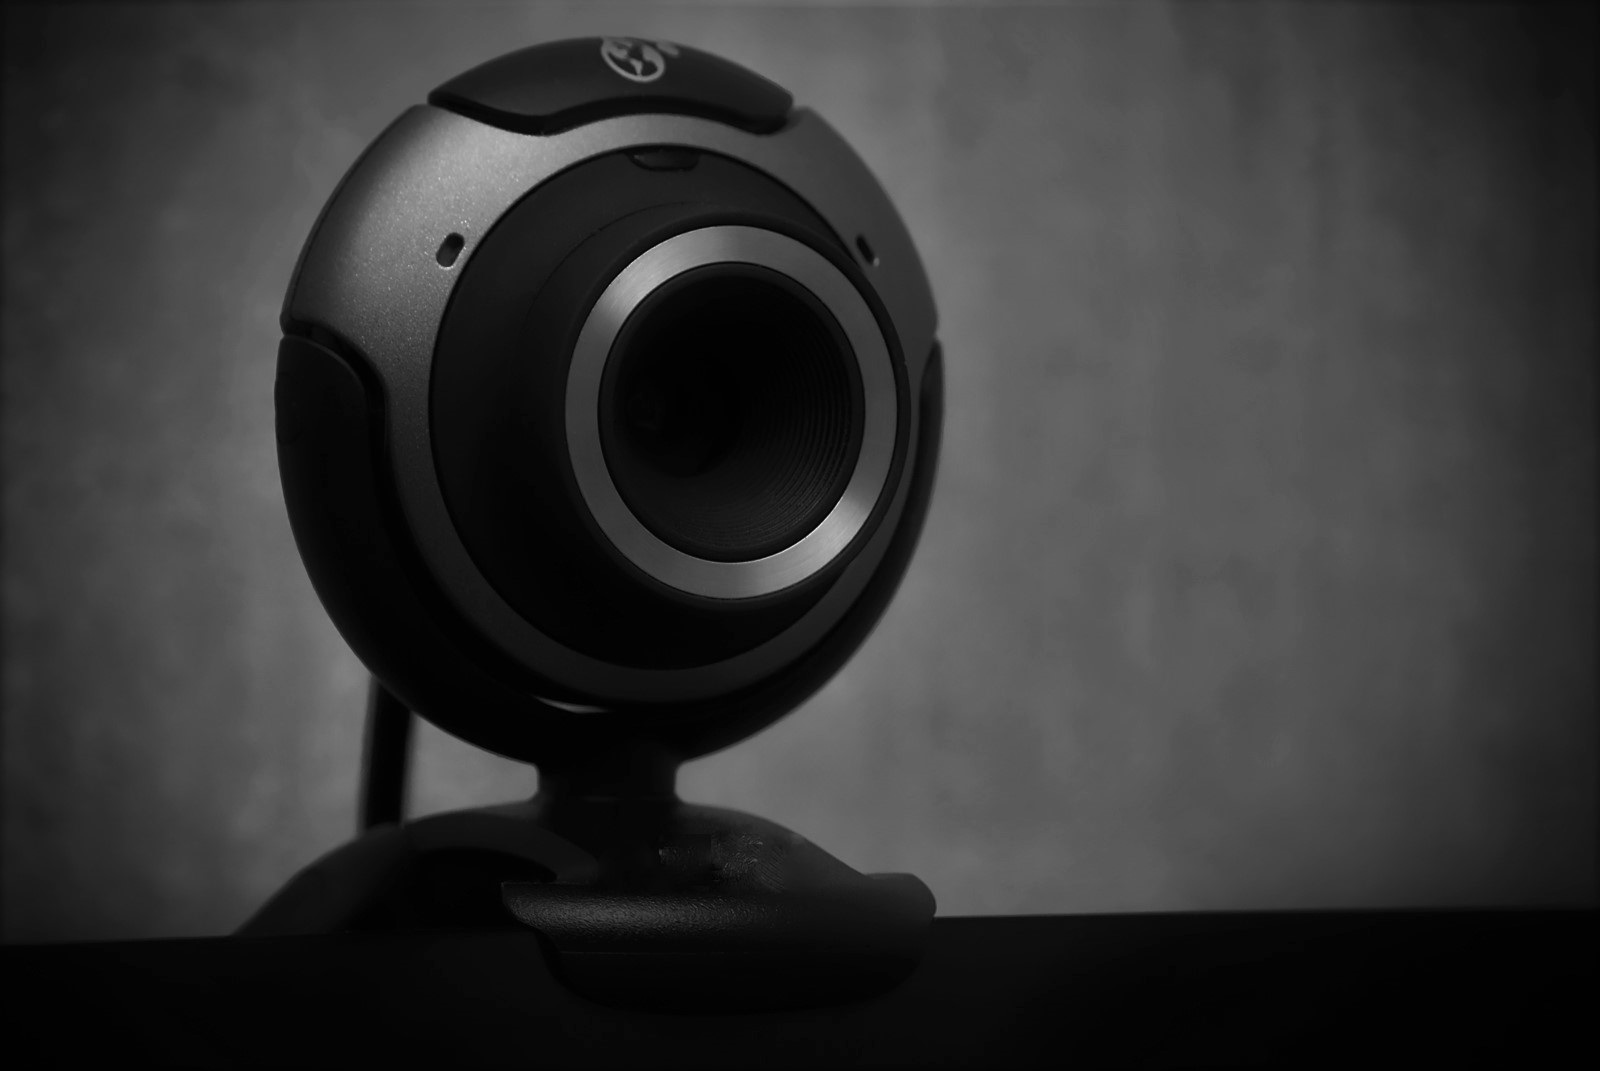 Mejores webcams para PC: Las cámaras con mejor calidad-precio de 2020